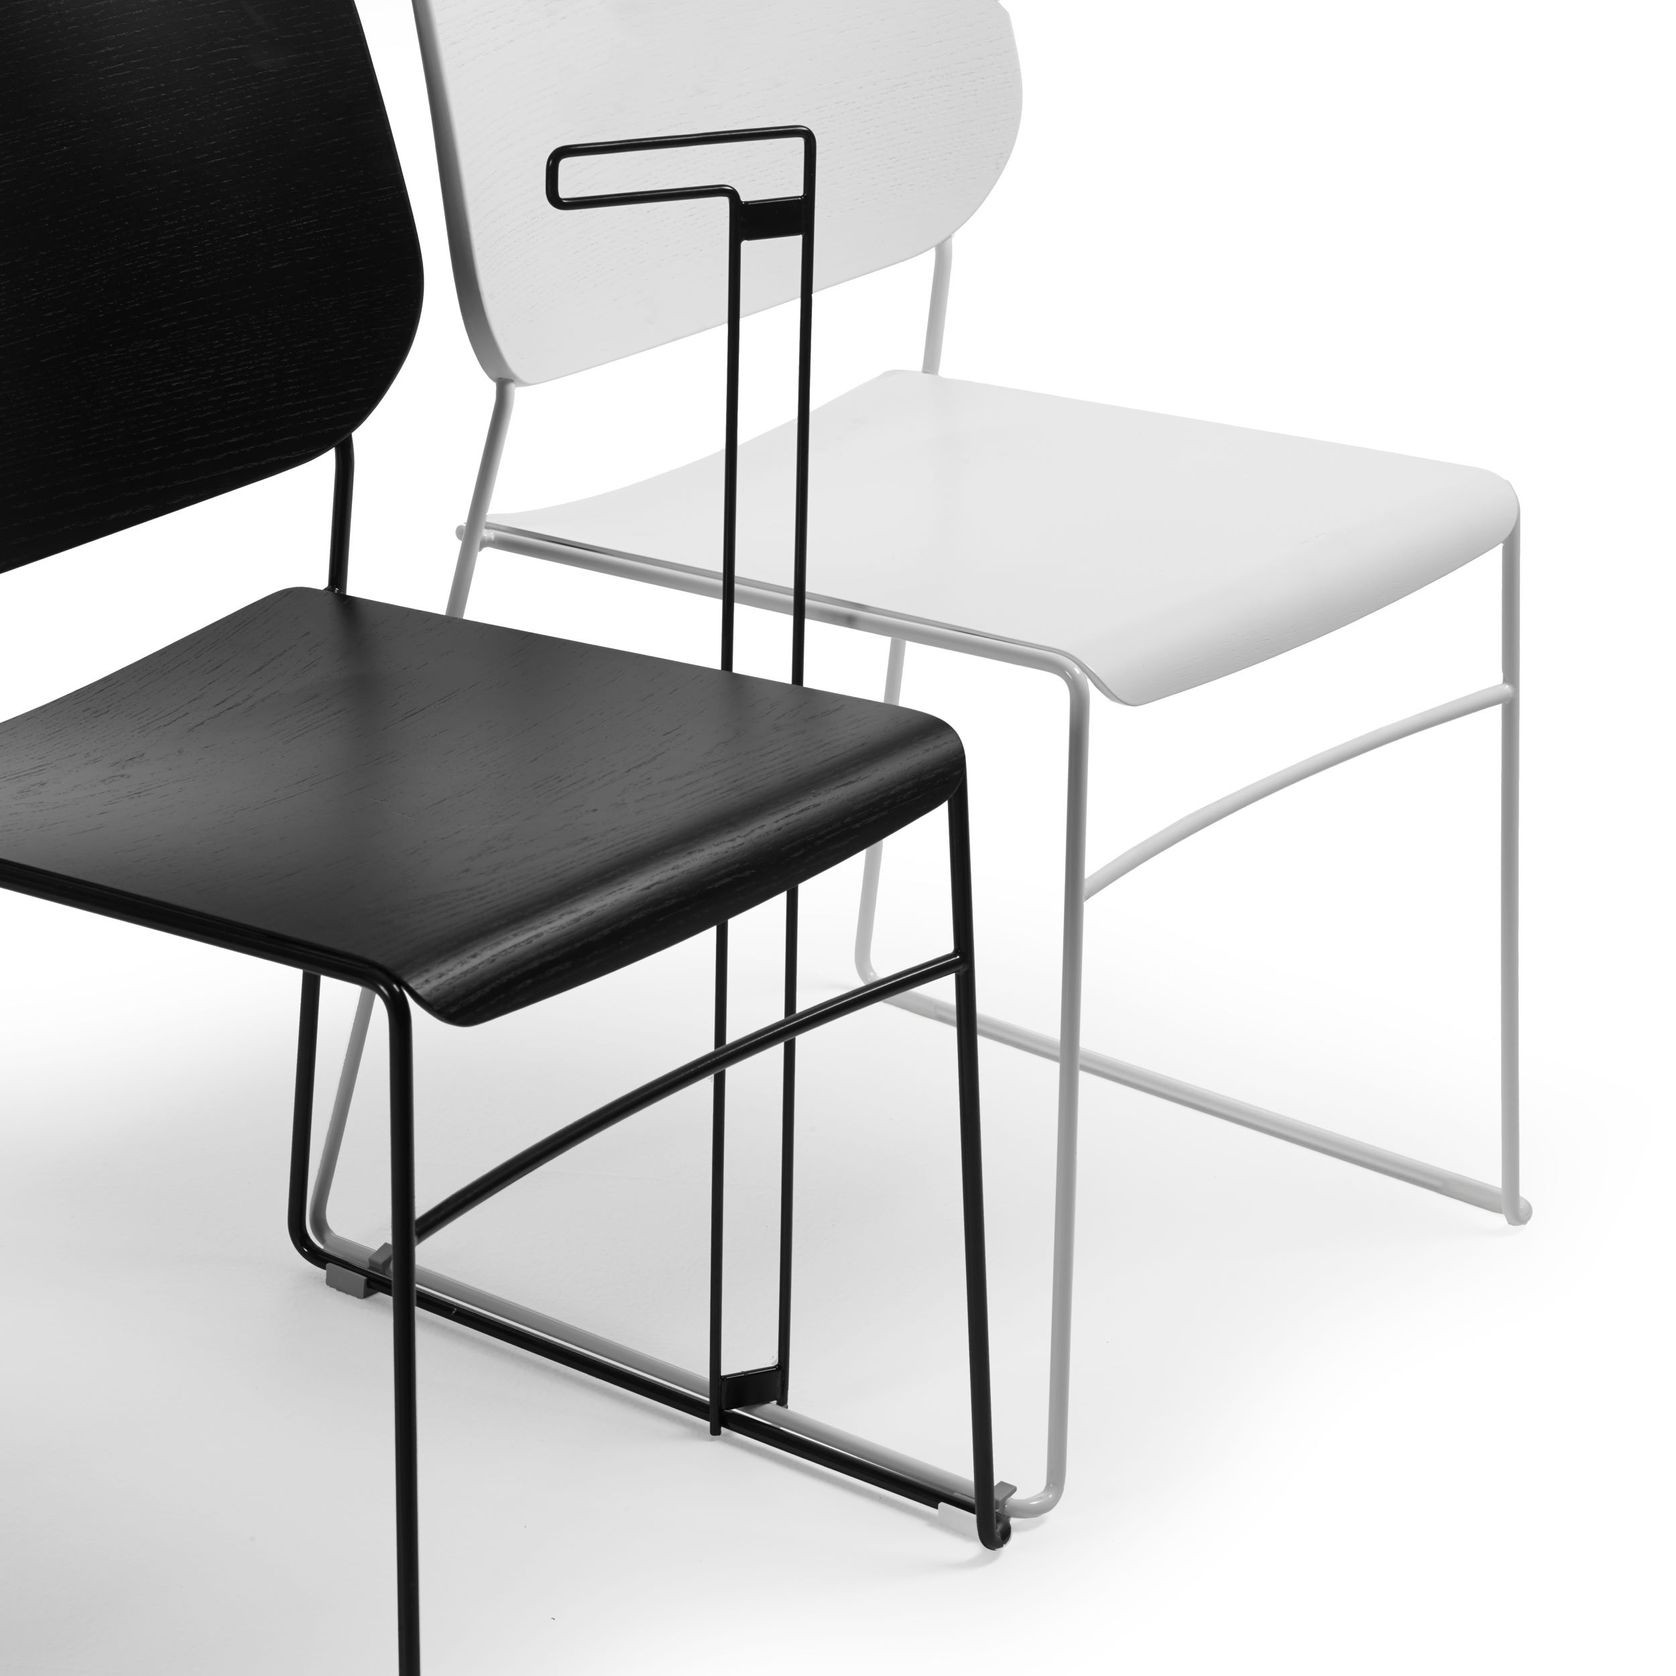 Lite Stackable Chair by Broberg & Ridderstråle gallery detail image